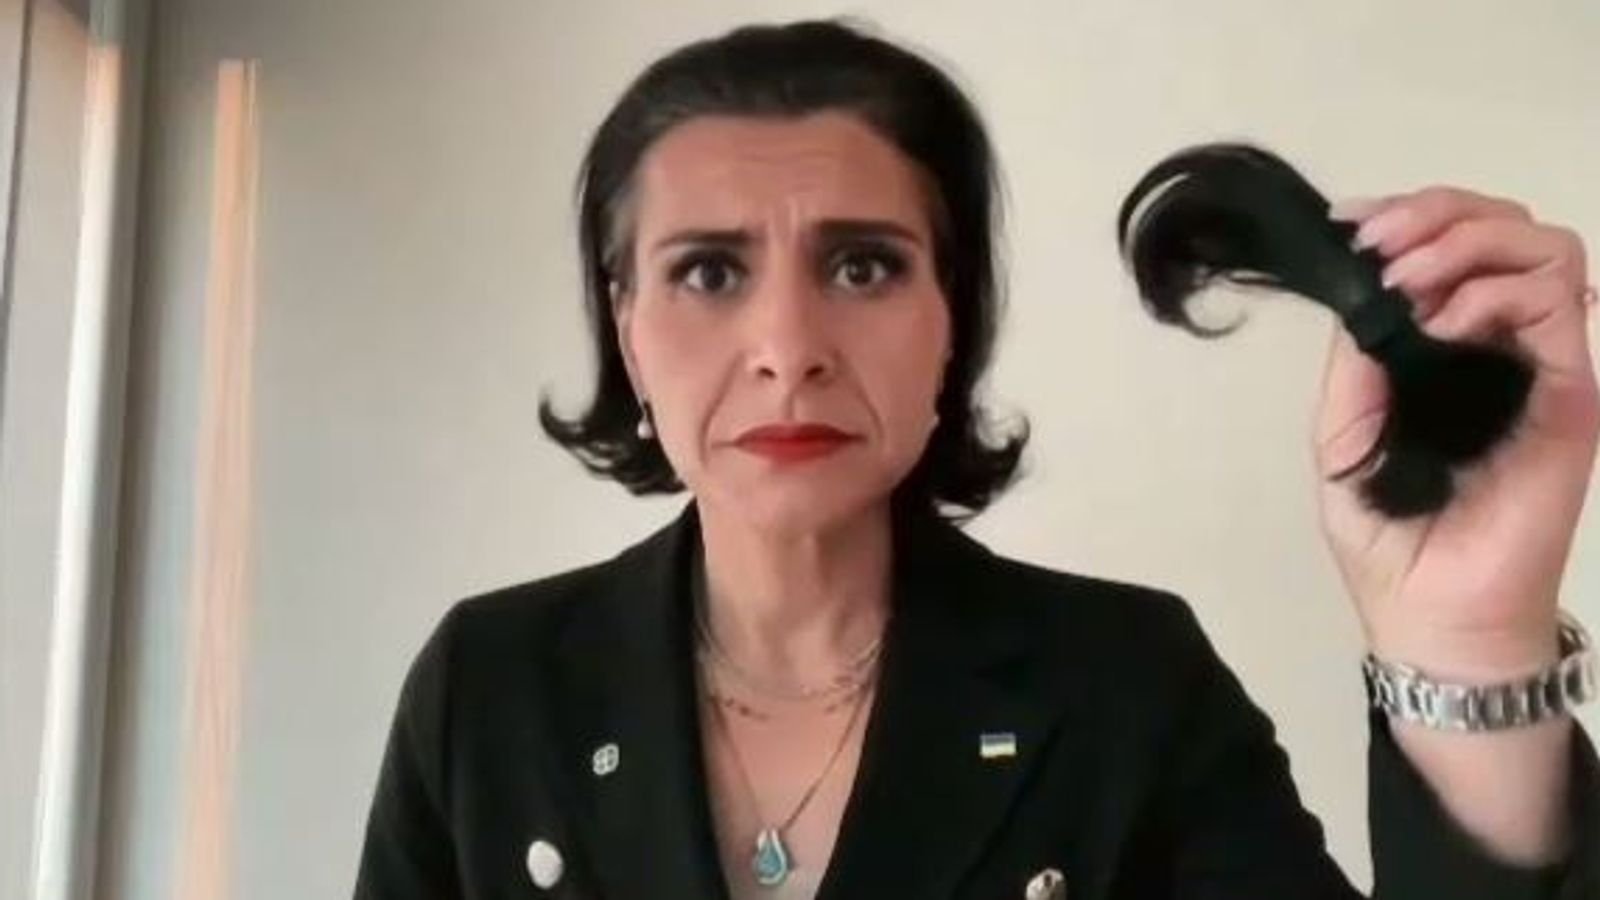 Une eurodéputée suédoise se coupe les cheveux lors d’un discours au Parlement européen en solidarité avec les femmes iraniennes après la mort de Mahsa Amini |  Nouvelles du monde